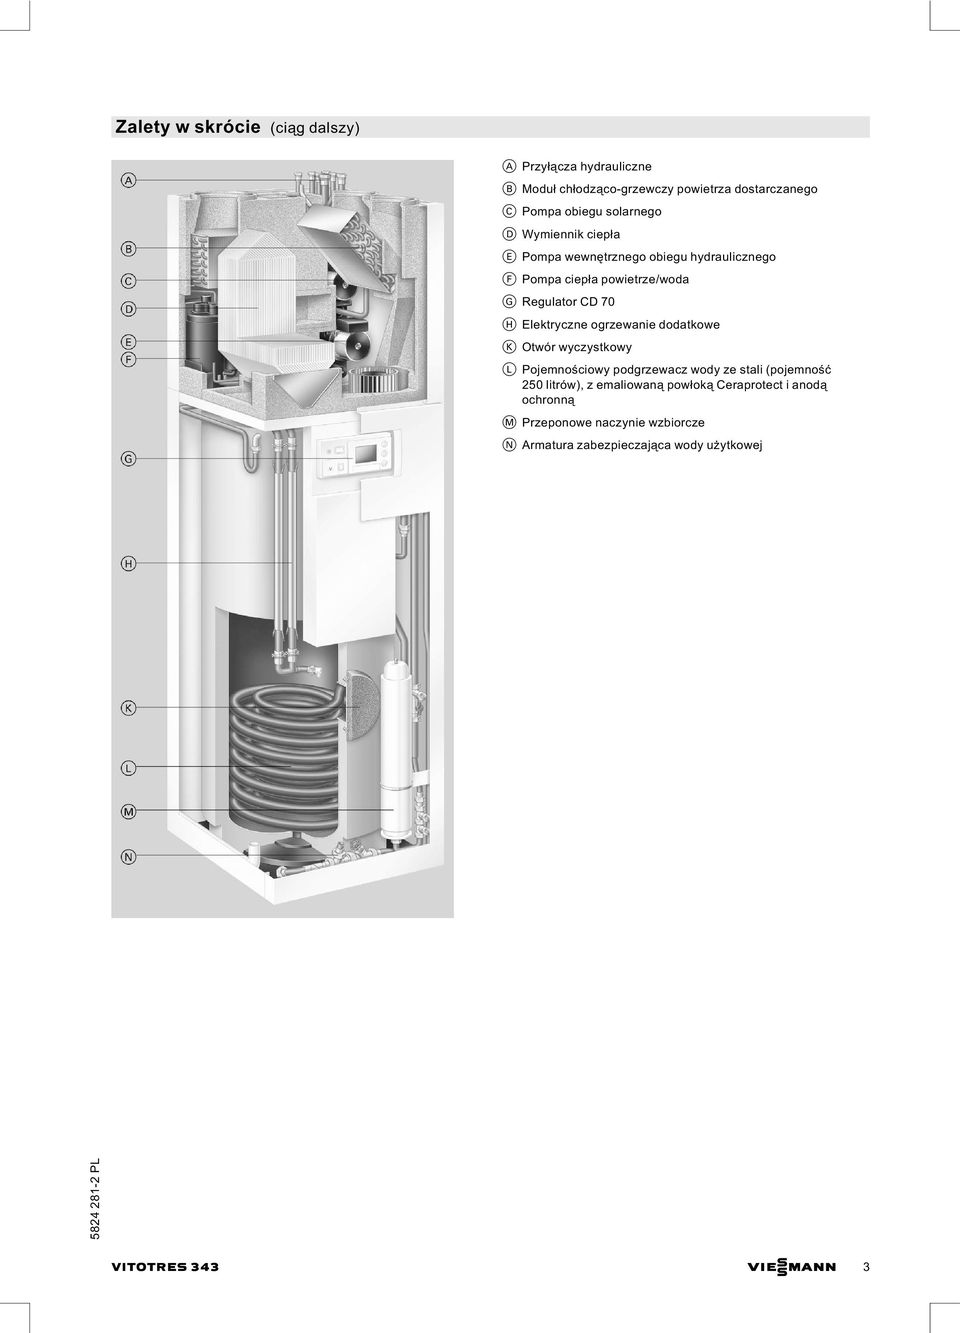 Elektryczne ogrzewanie dodatkowe K Otwór wyczystkowy L Pojemnościowy podgrzewacz wody ze stali (pojemność 250 litrów), z